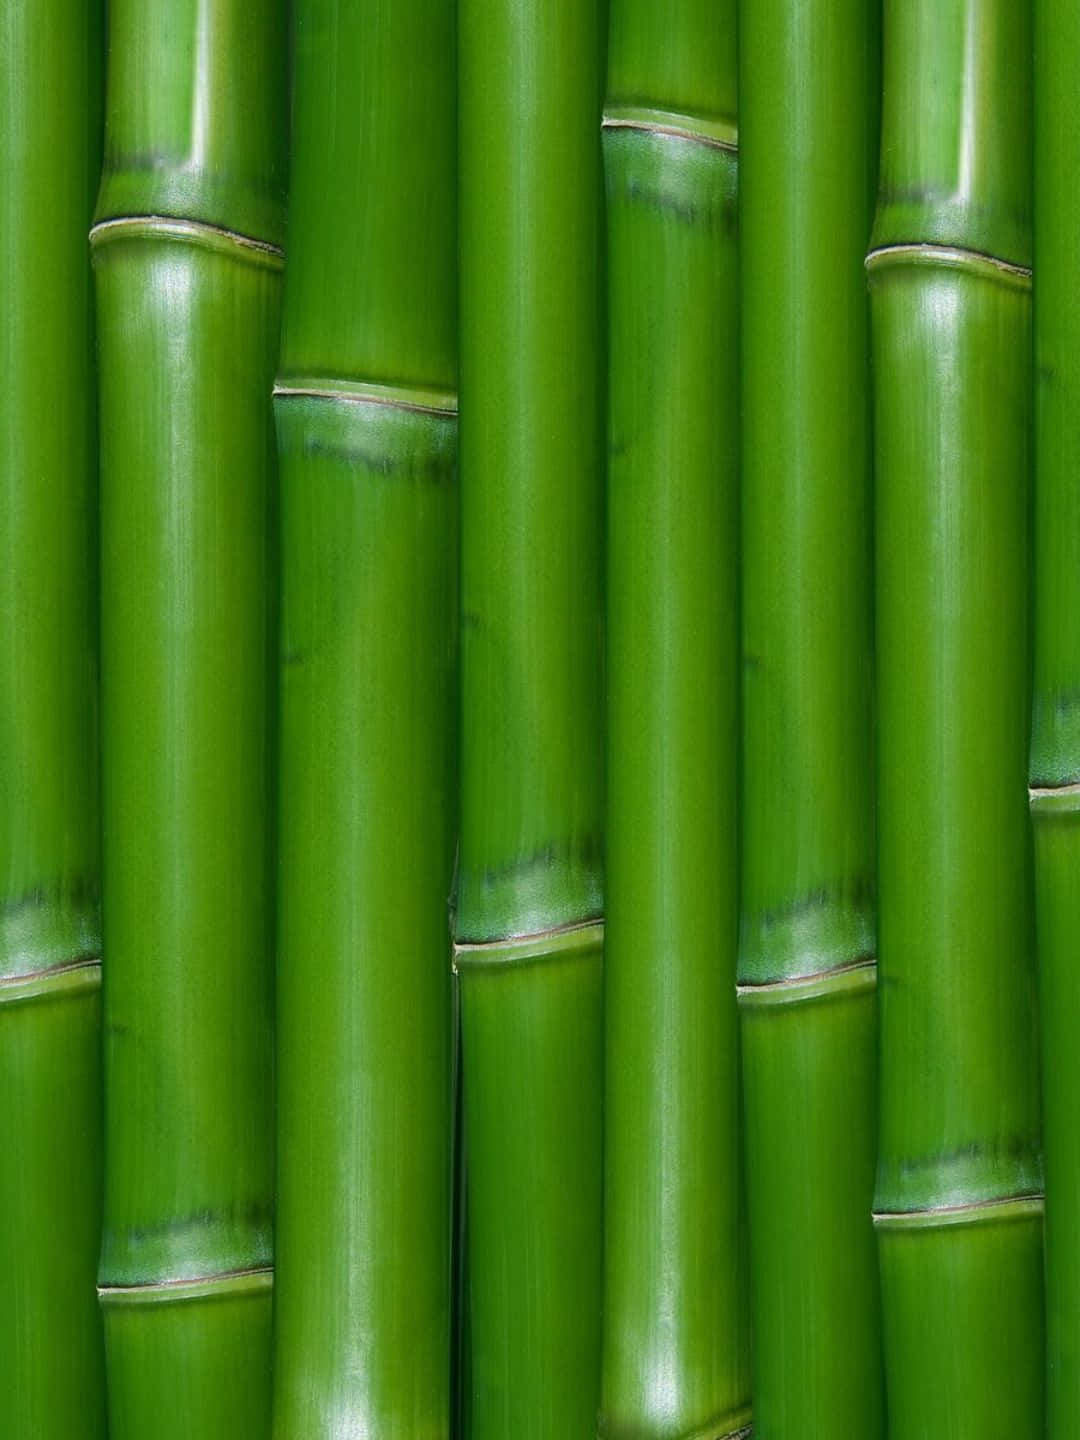 1440pbambus Hintergrund Helle Grüne Stiele